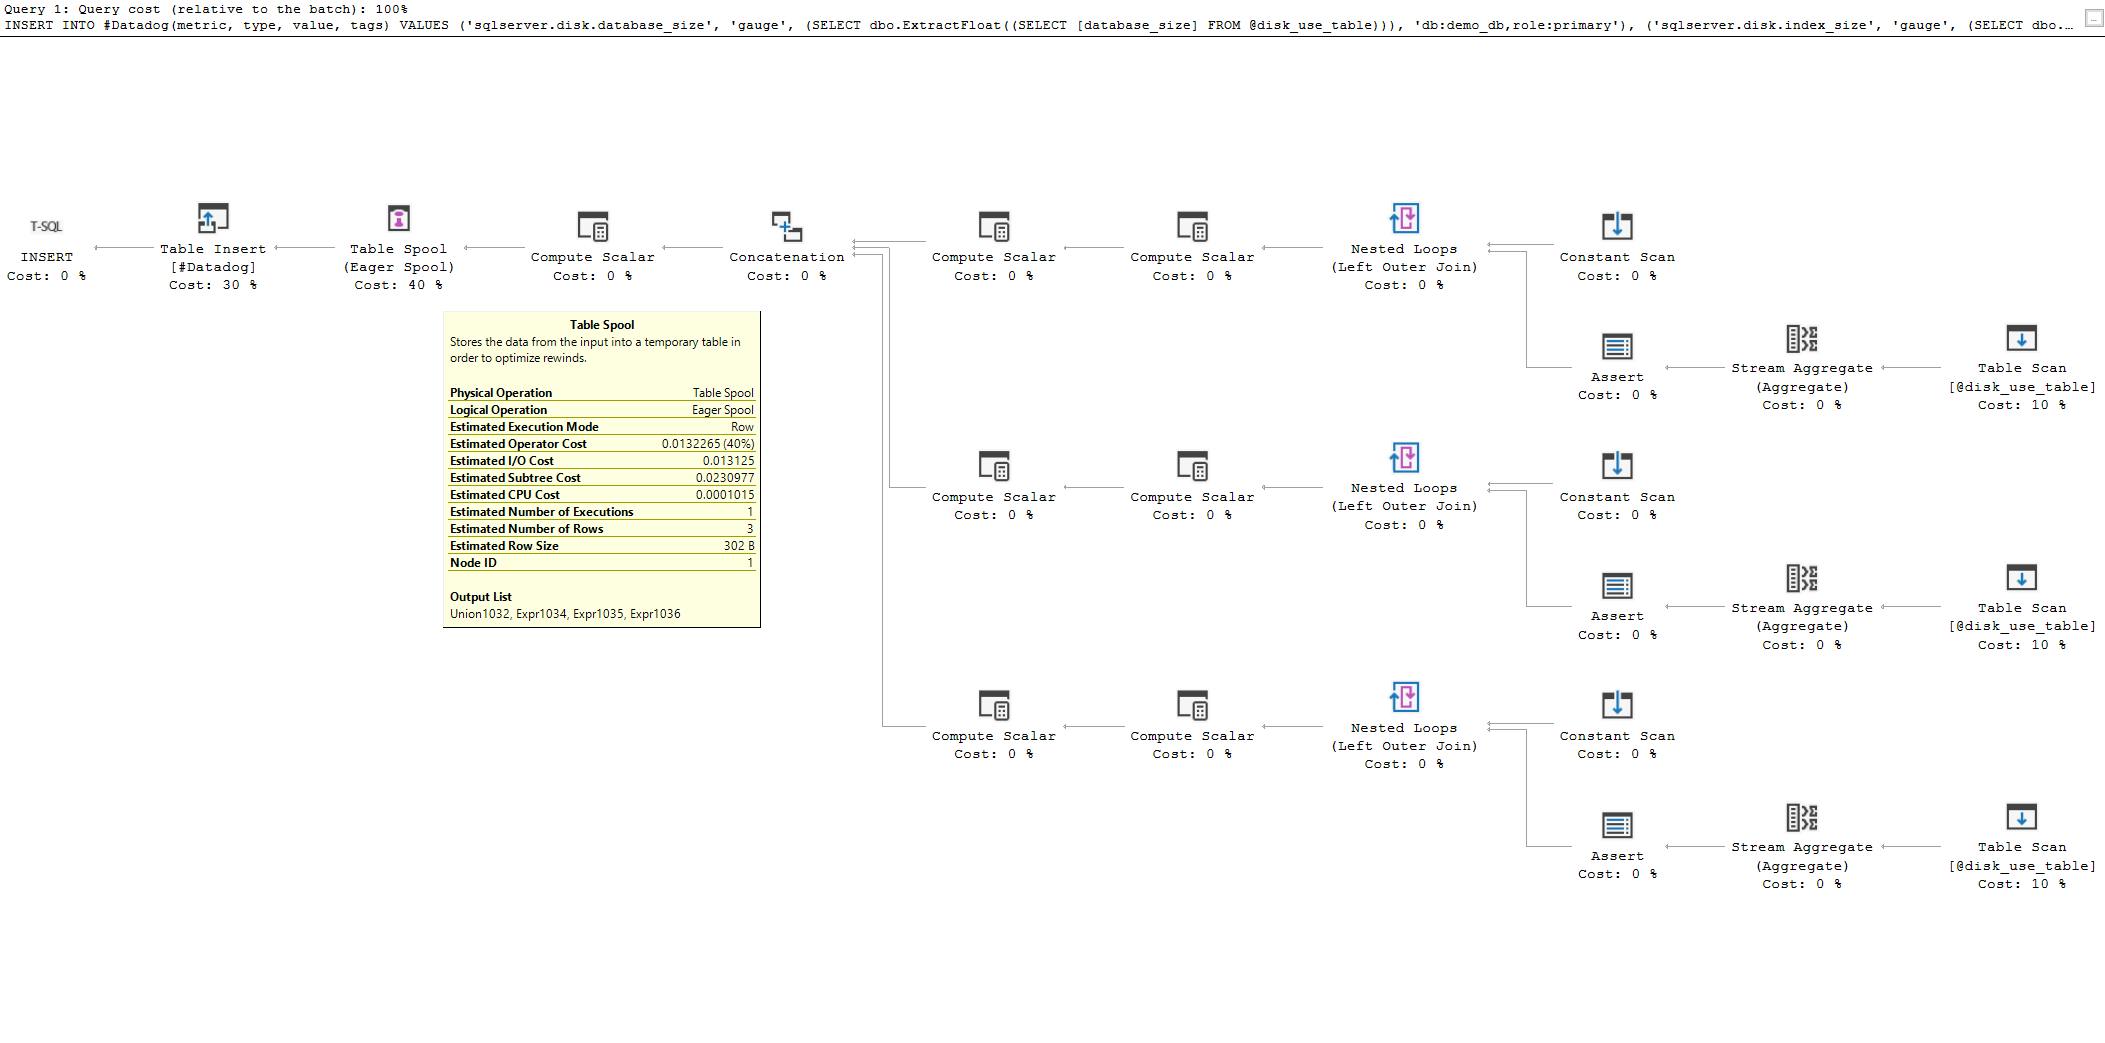 SQL Server felügyeleti eszközök: Lekérdezési terv diagramja az SQL Server rendszerben